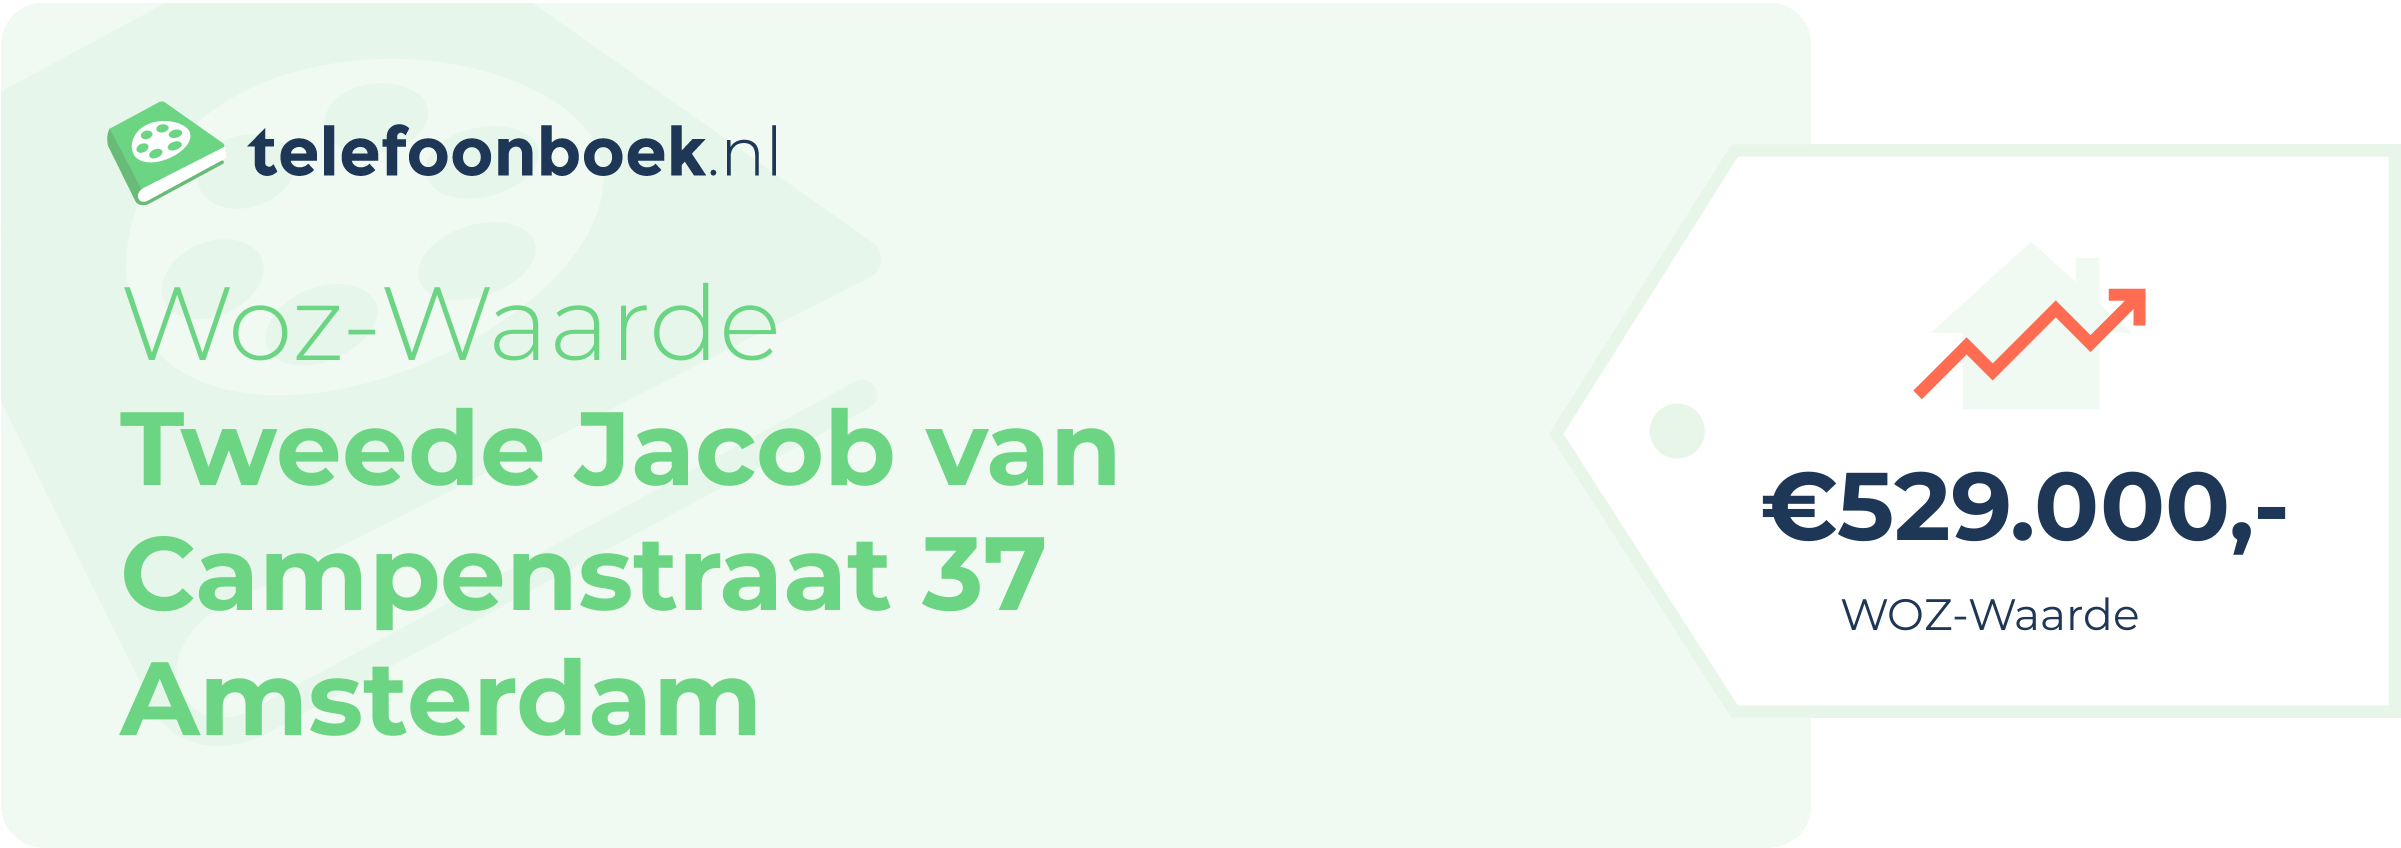 WOZ-waarde Tweede Jacob Van Campenstraat 37 Amsterdam